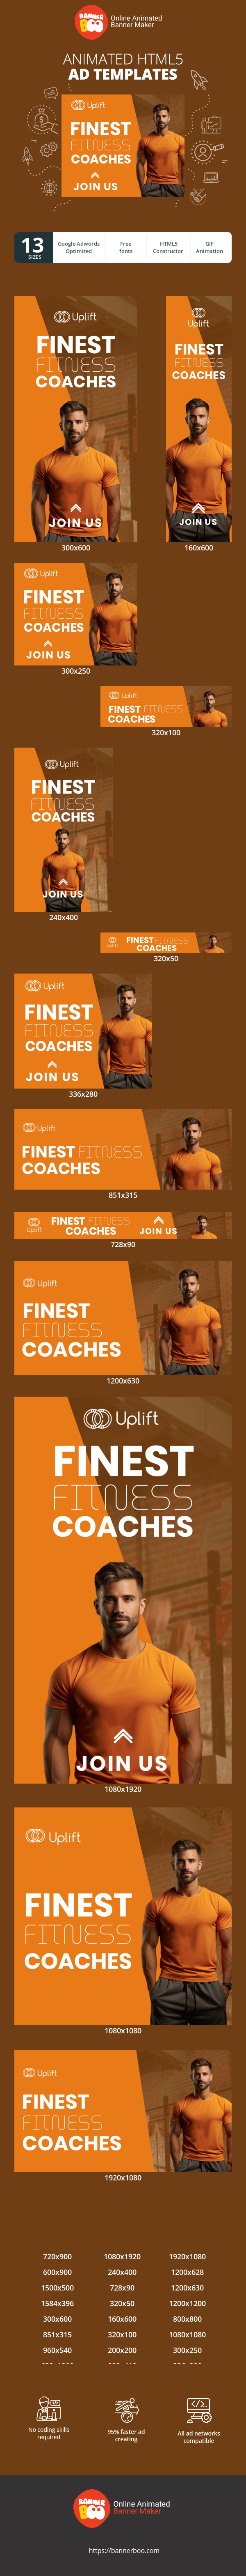 Шаблон рекламного банера — Finest Fitness Coaches — Sport